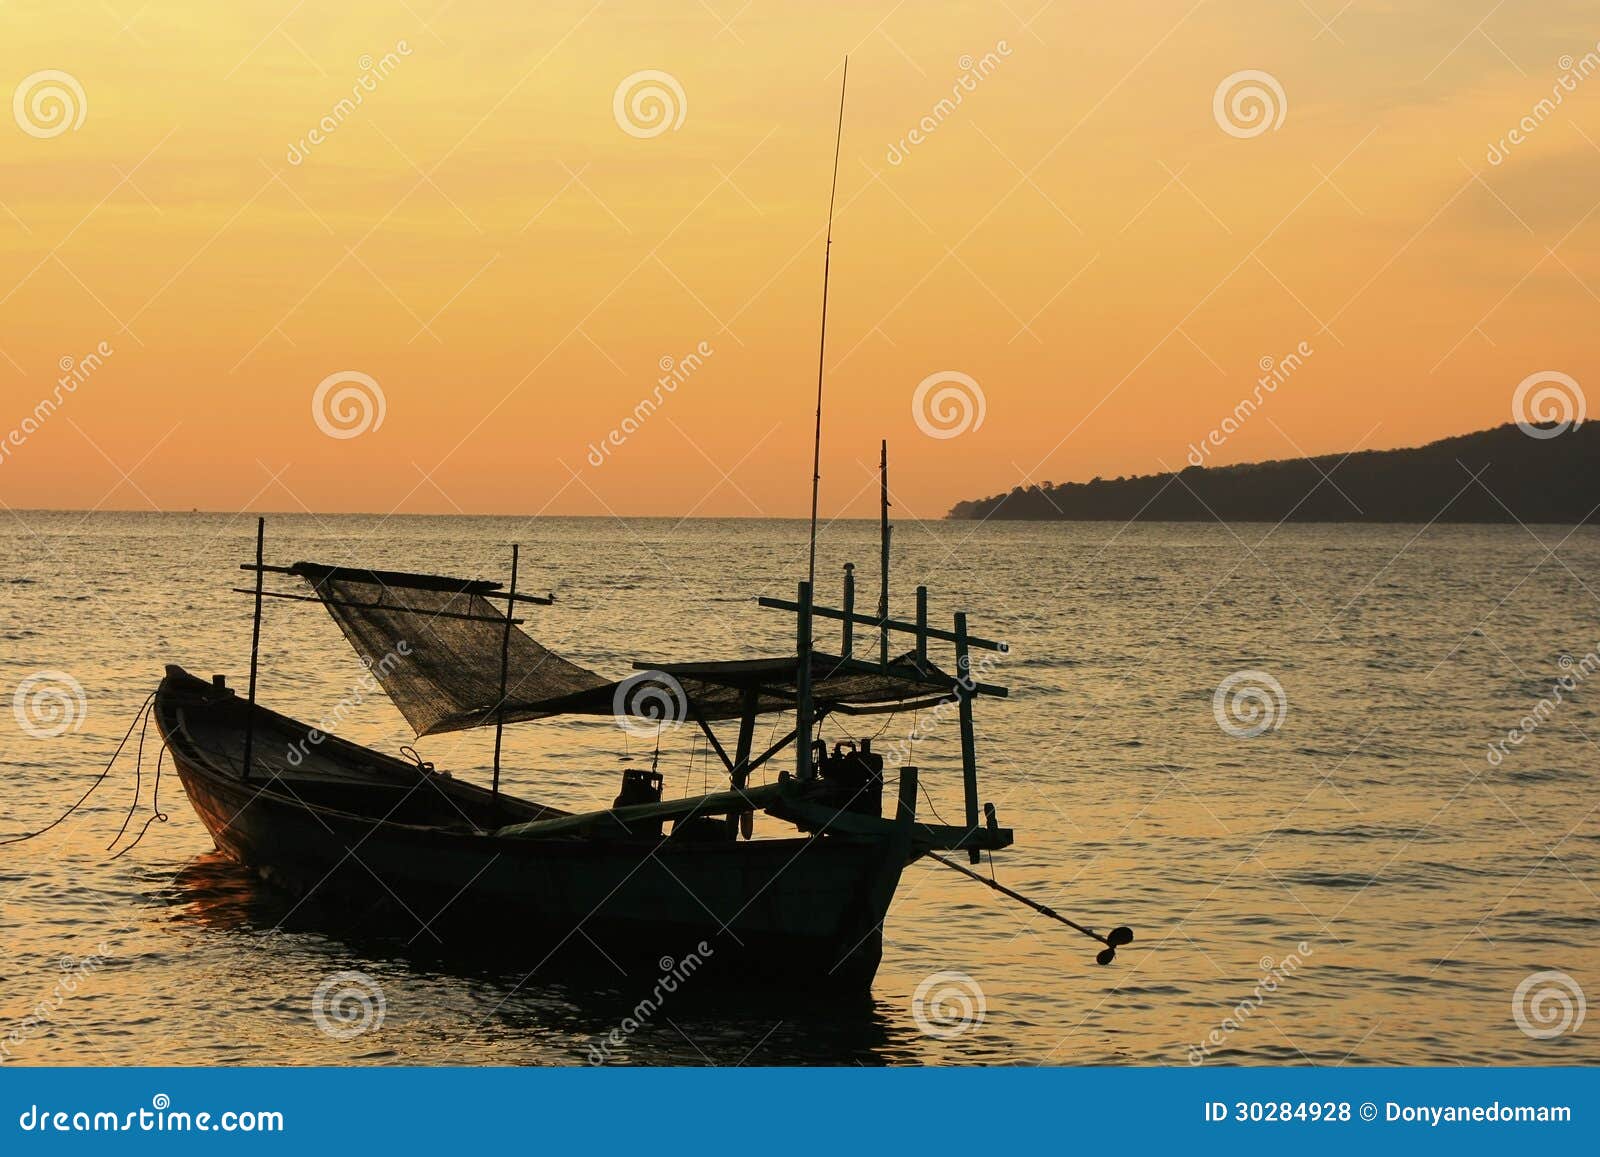 Kontur av den traditionella fiskebåten på soluppgång, Koh Rong isla. Kontur av den traditionella fiskebåten på soluppgång, Koh Rong ö, Cambodja, South East Asia